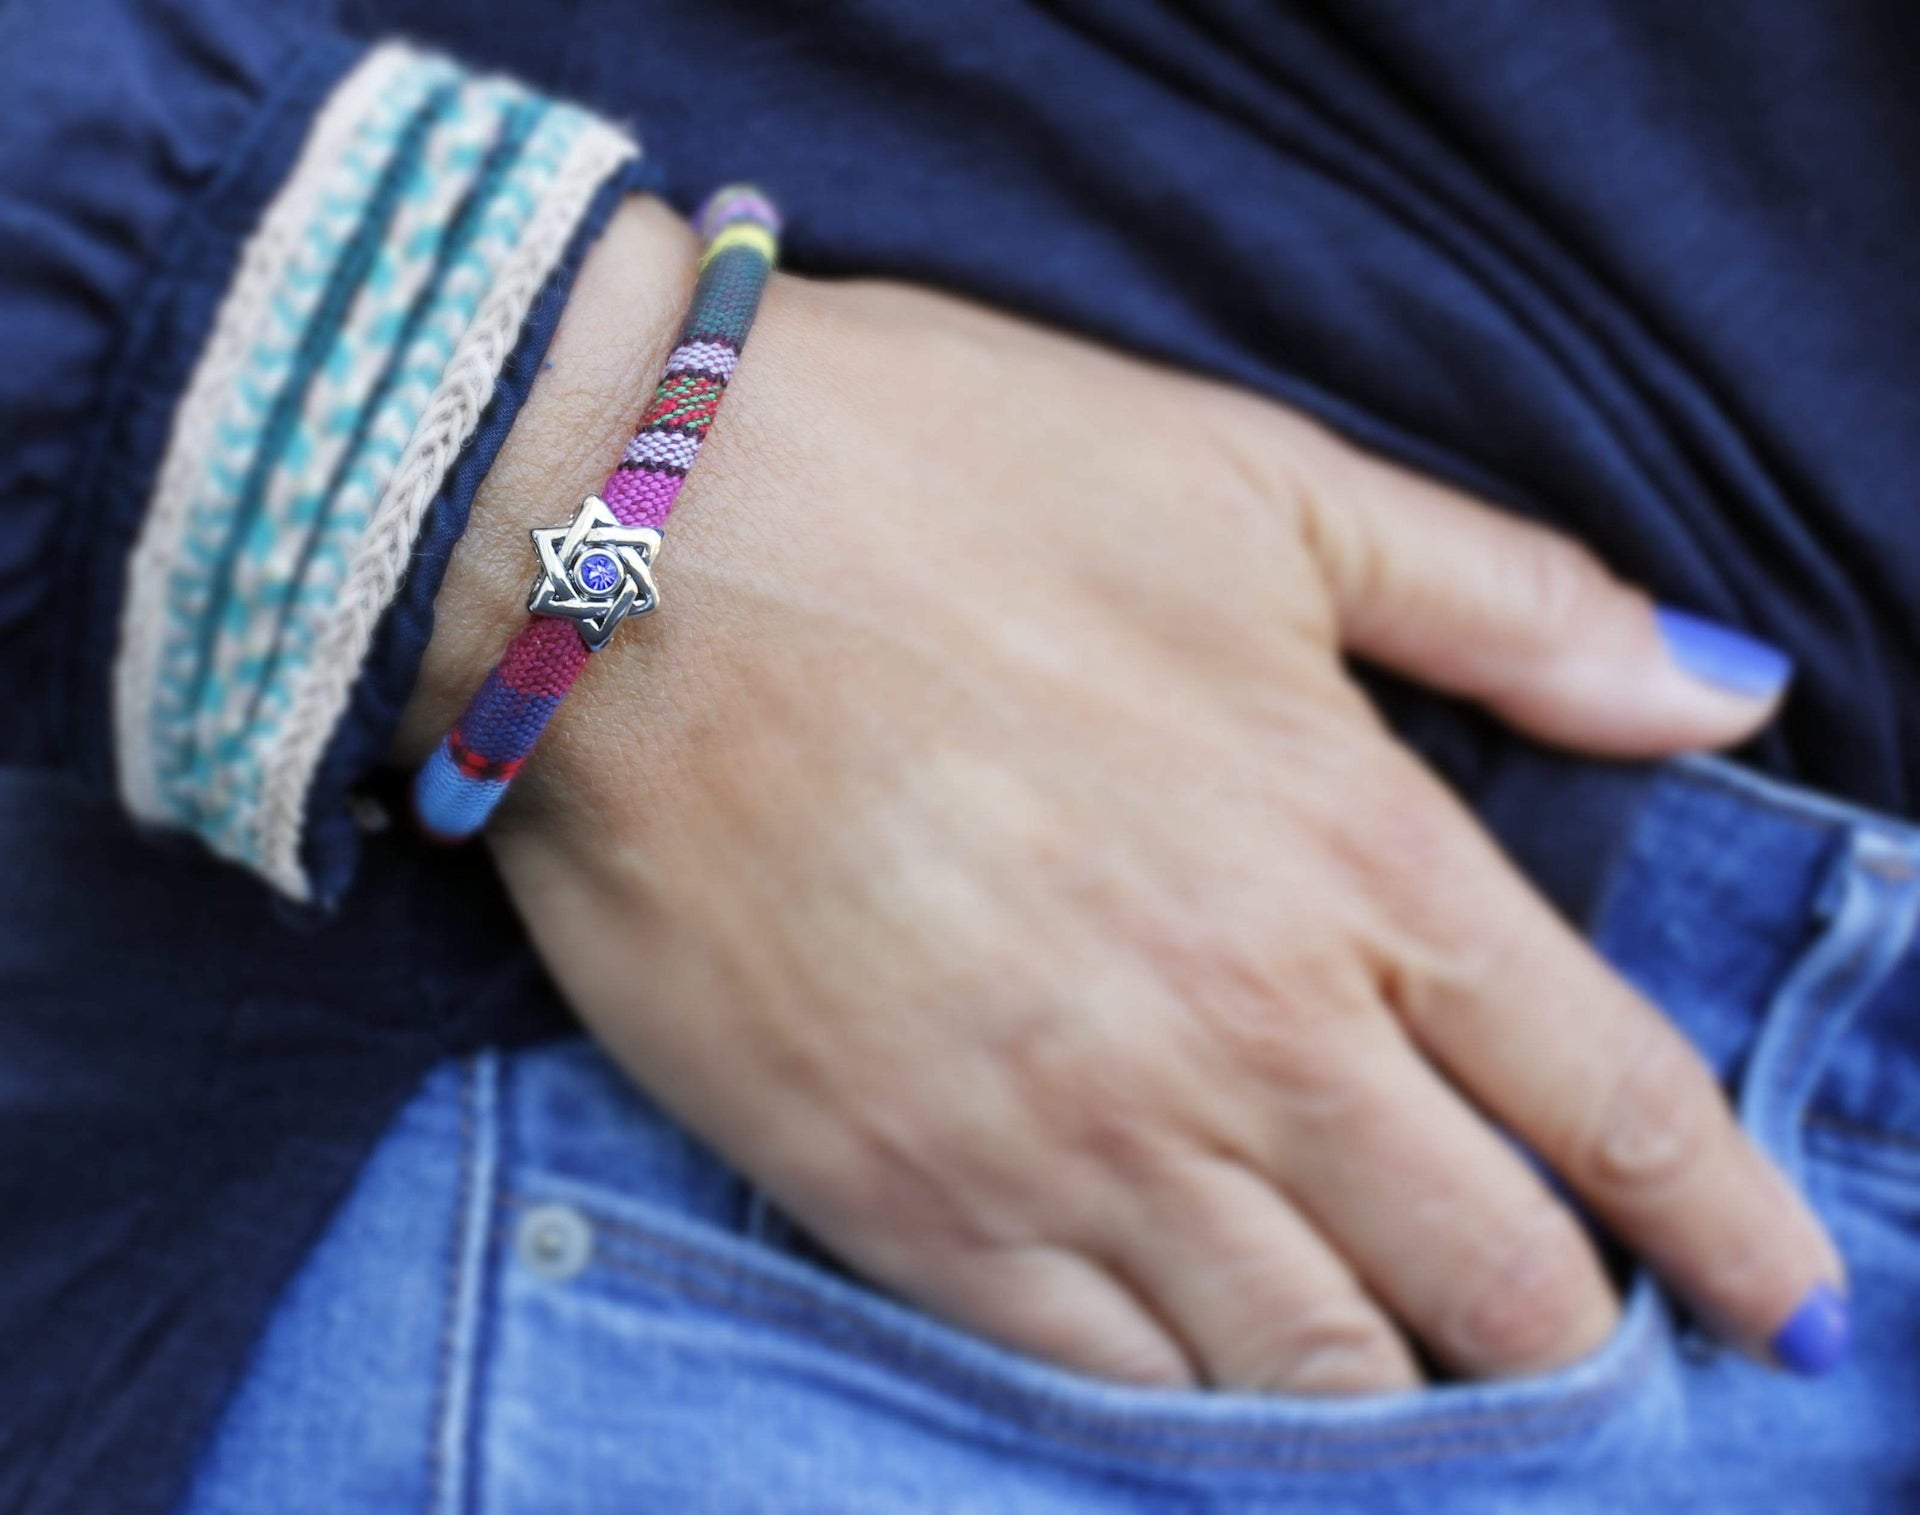 My Tribe by Sea Ranch Jewelry Bracelets Swarovski Star of David Woven Cotton Bracelet - Choice of Color